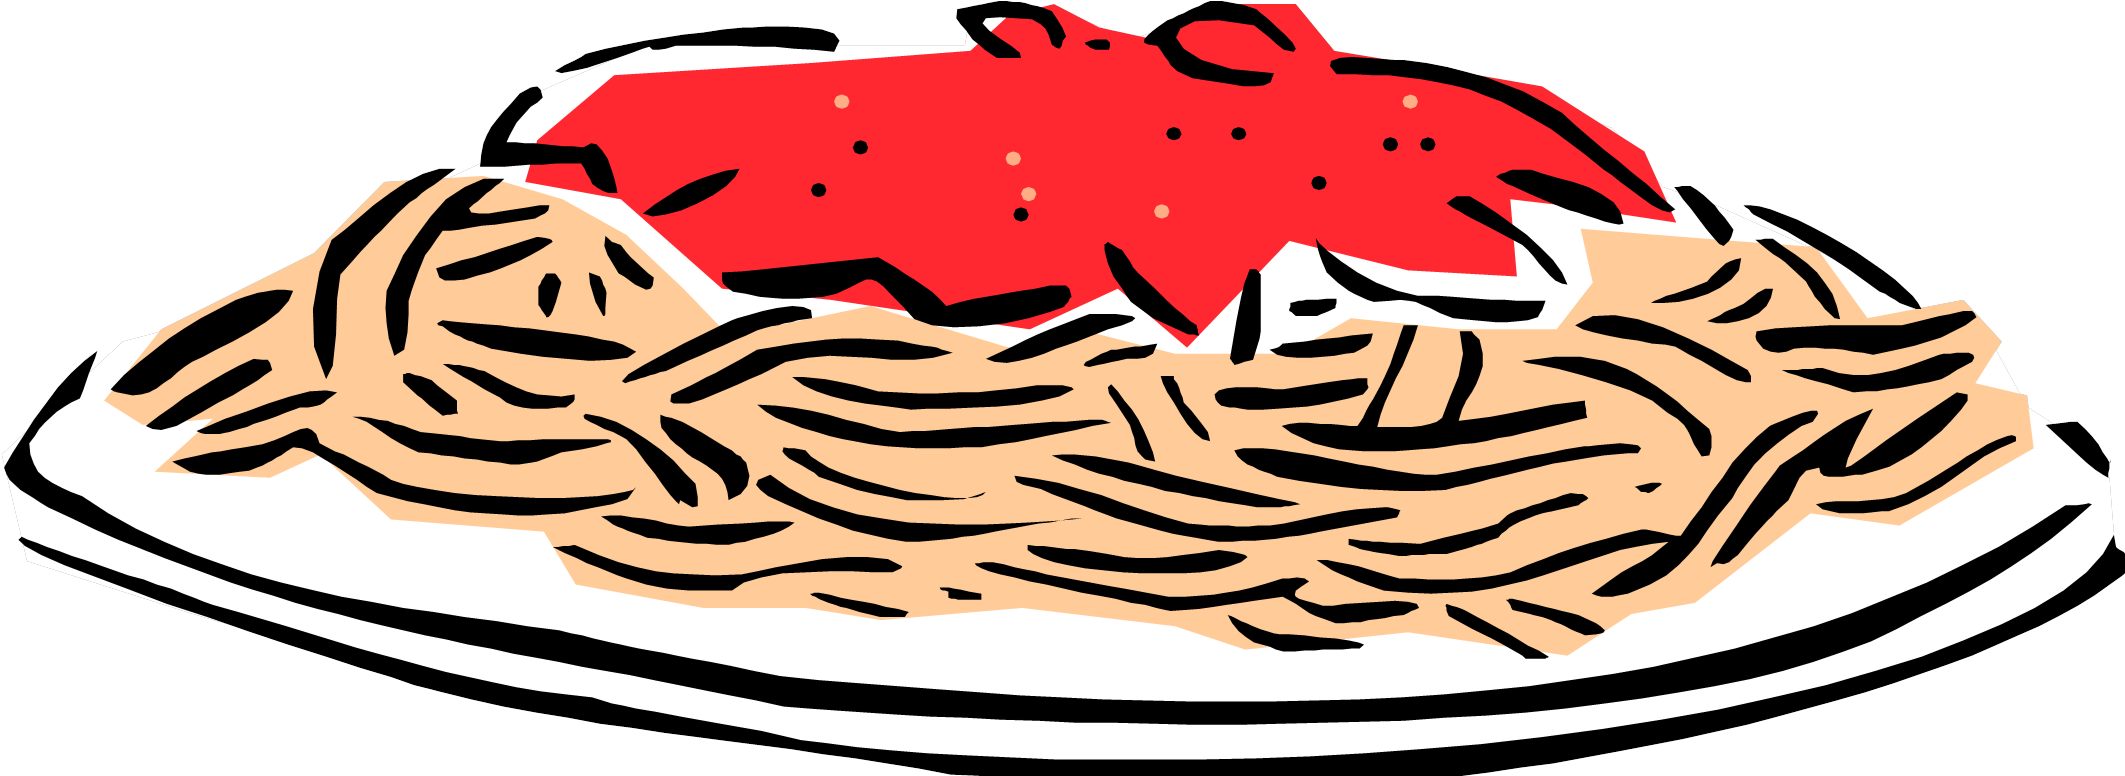 Spaghetti Clipart Free Download Clip Art On - Spaghetti (2150x775)